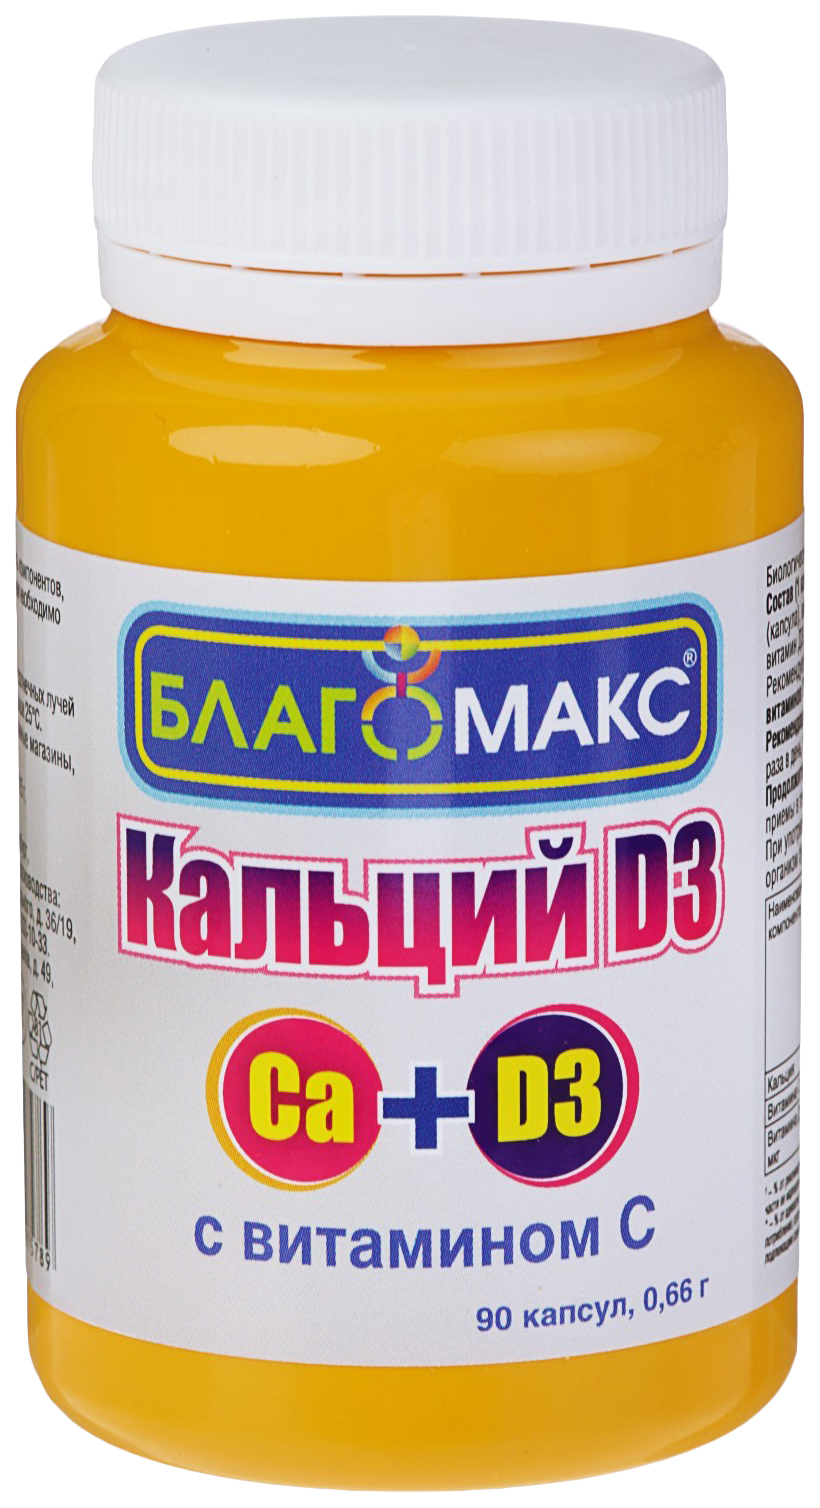 Витаминный комплекс Благомакс Кальций D3 с витамином С капсулы 90 шт.